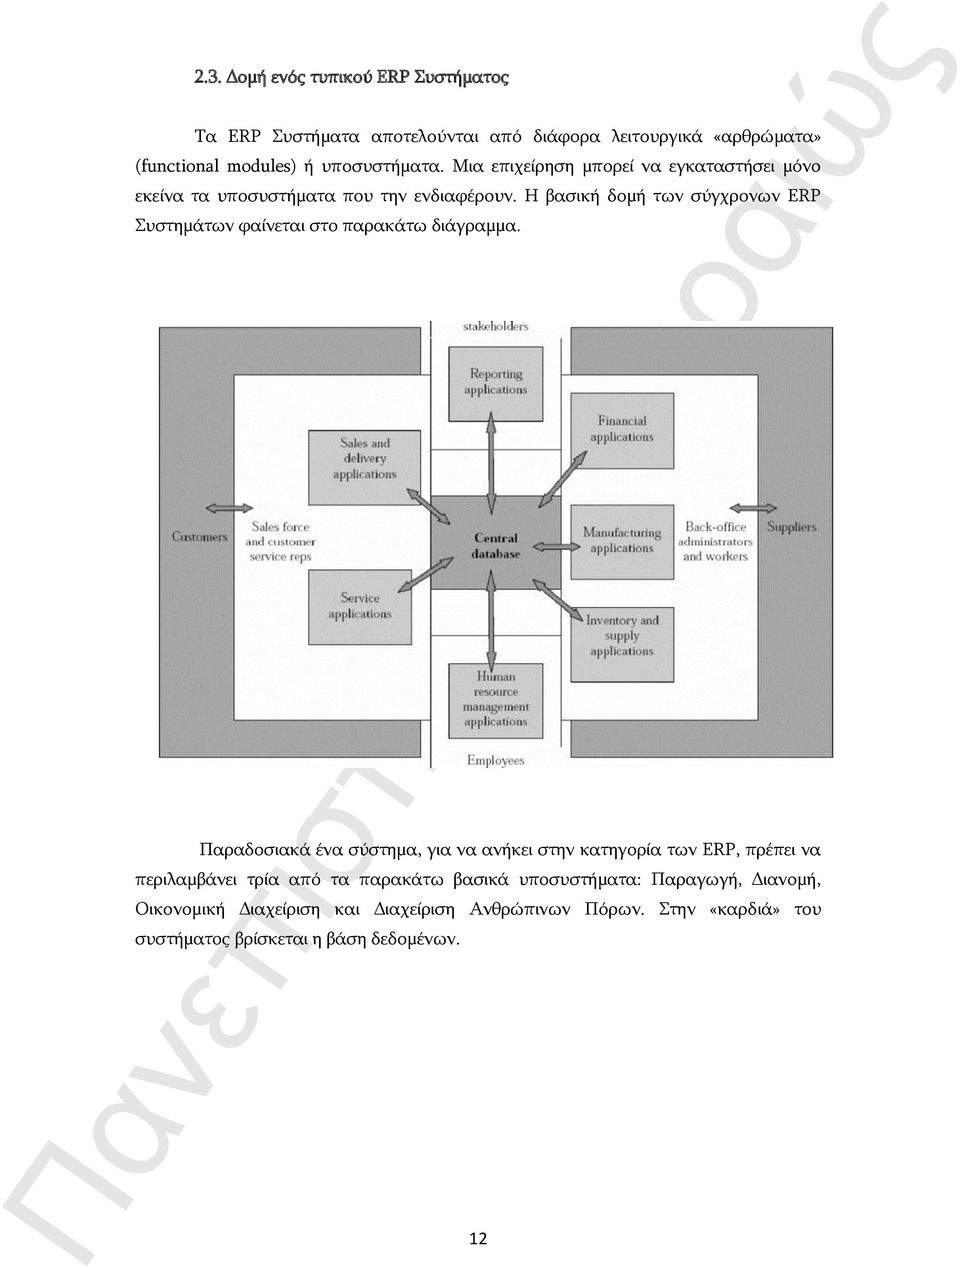 Η βασική δομή των σύγχρονων ERP Συστημάτων φαίνεται στο παρακάτω διάγραμμα.